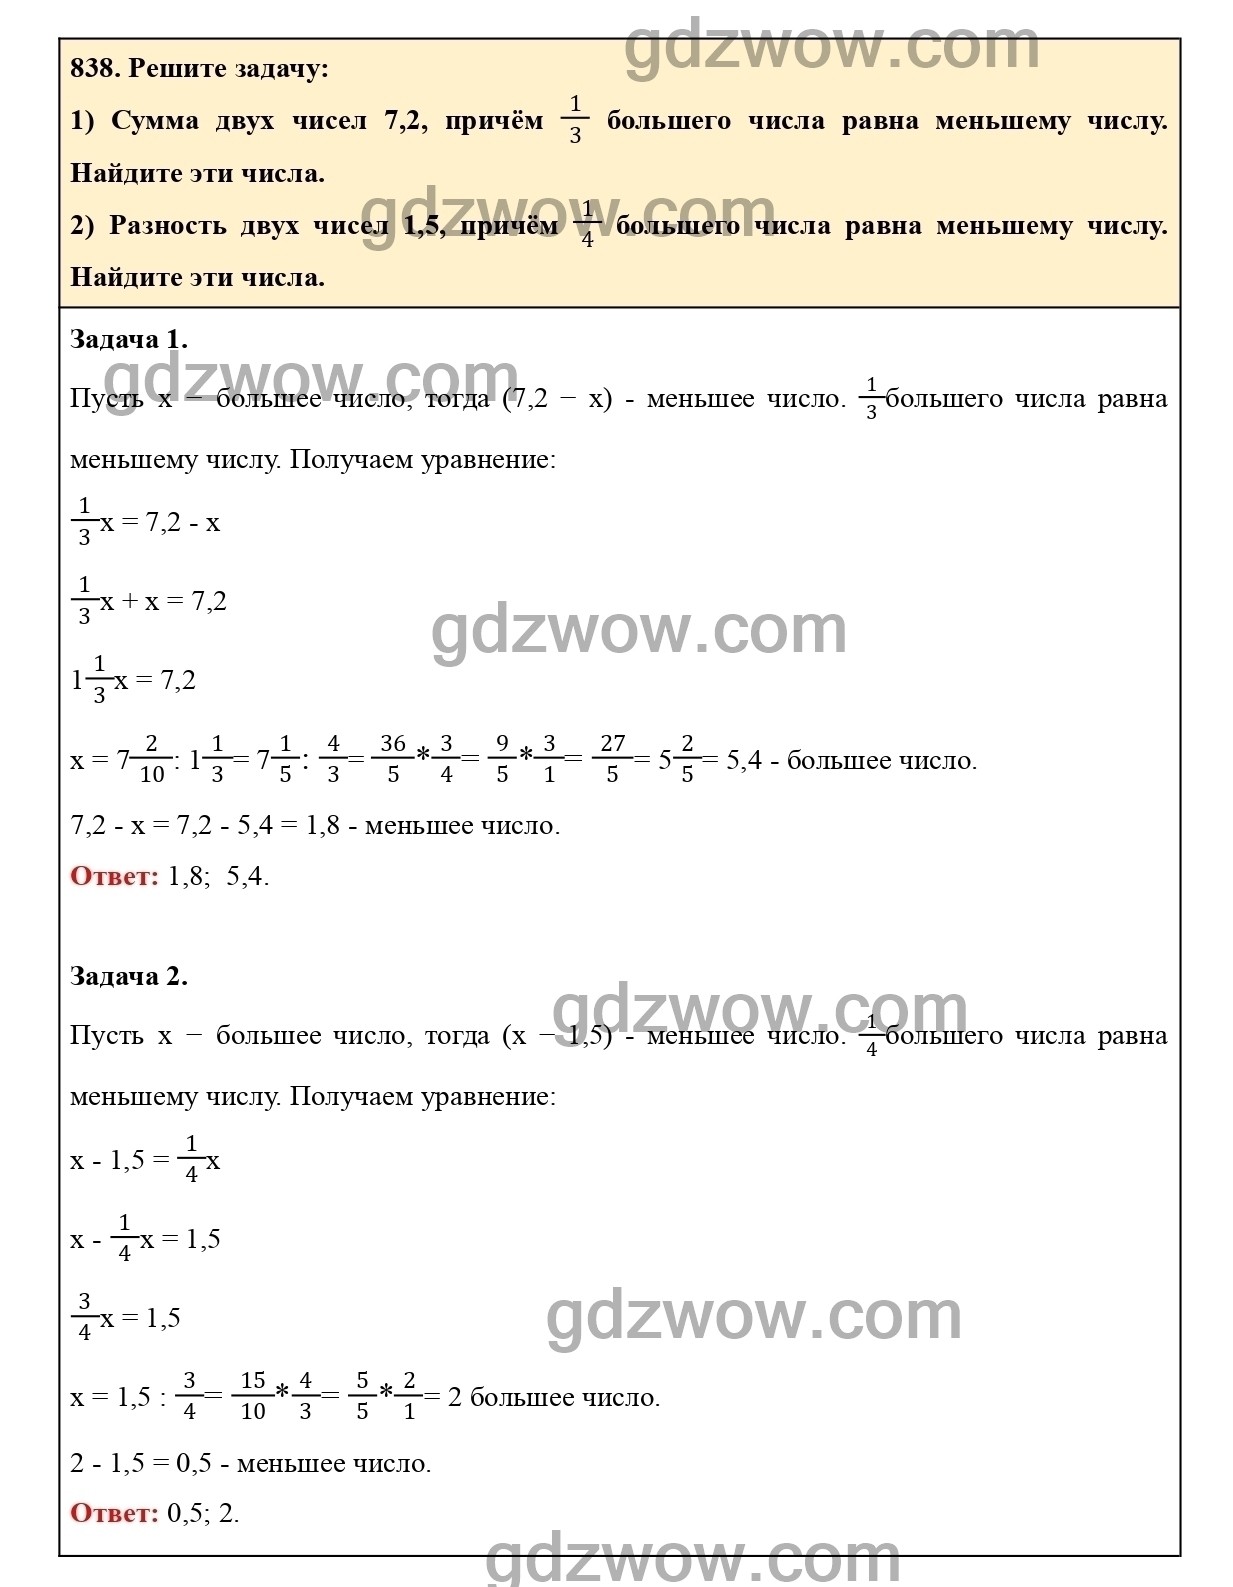 Номер 844 - ГДЗ по Математике 6 класс Учебник Виленкин, Жохов, Чесноков, Шварцбурд 2020. Часть 1 (решебник) - GDZwow